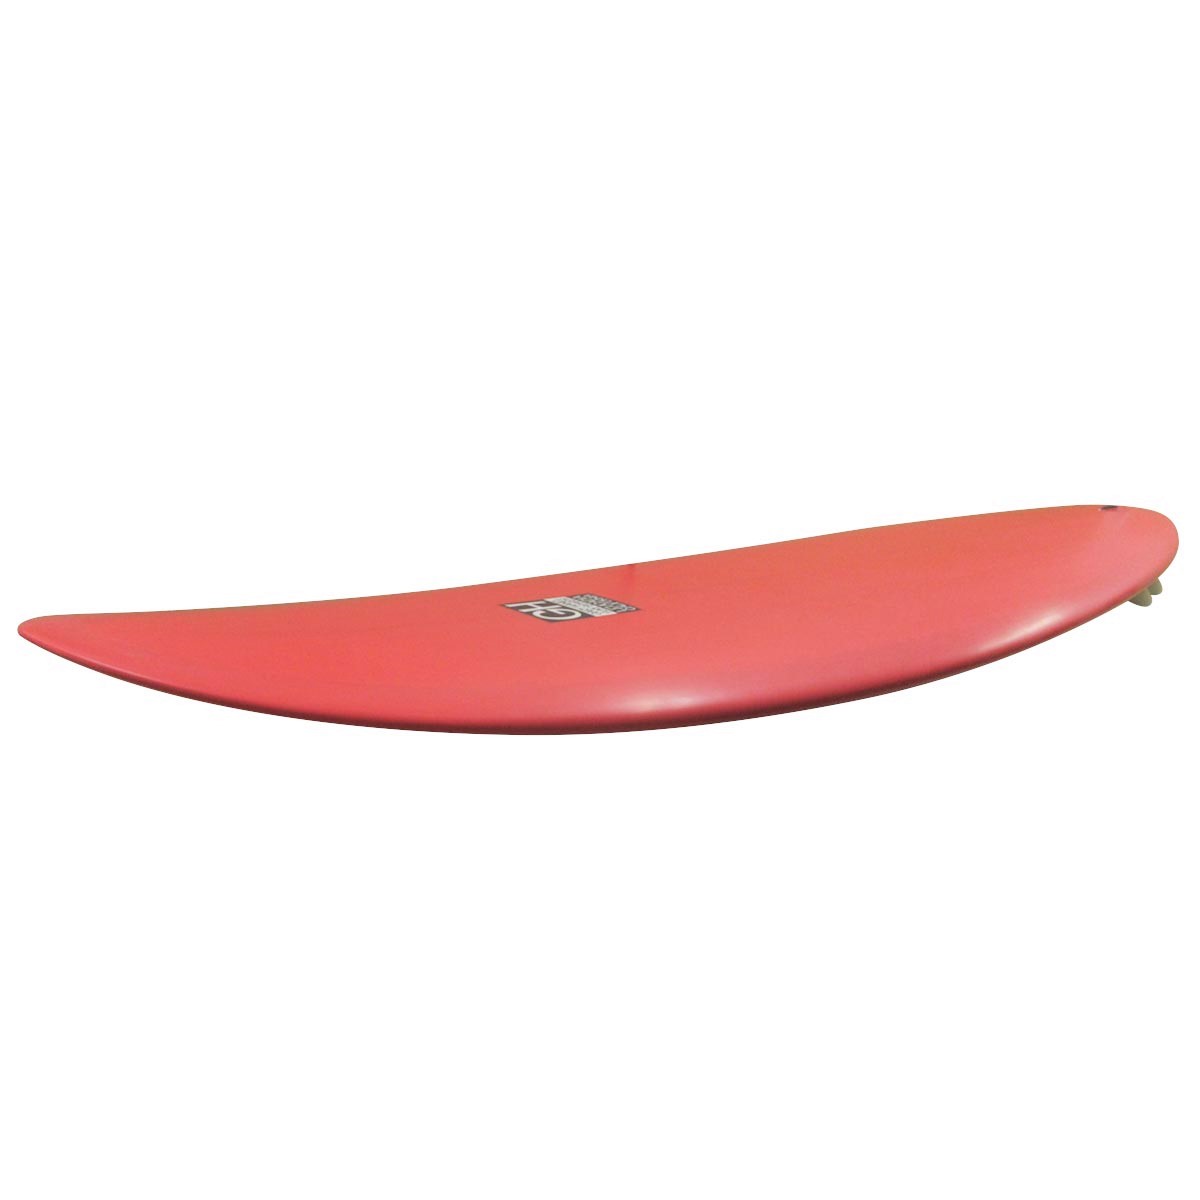 Gary Hanel Surfboards : Bonzer Egg